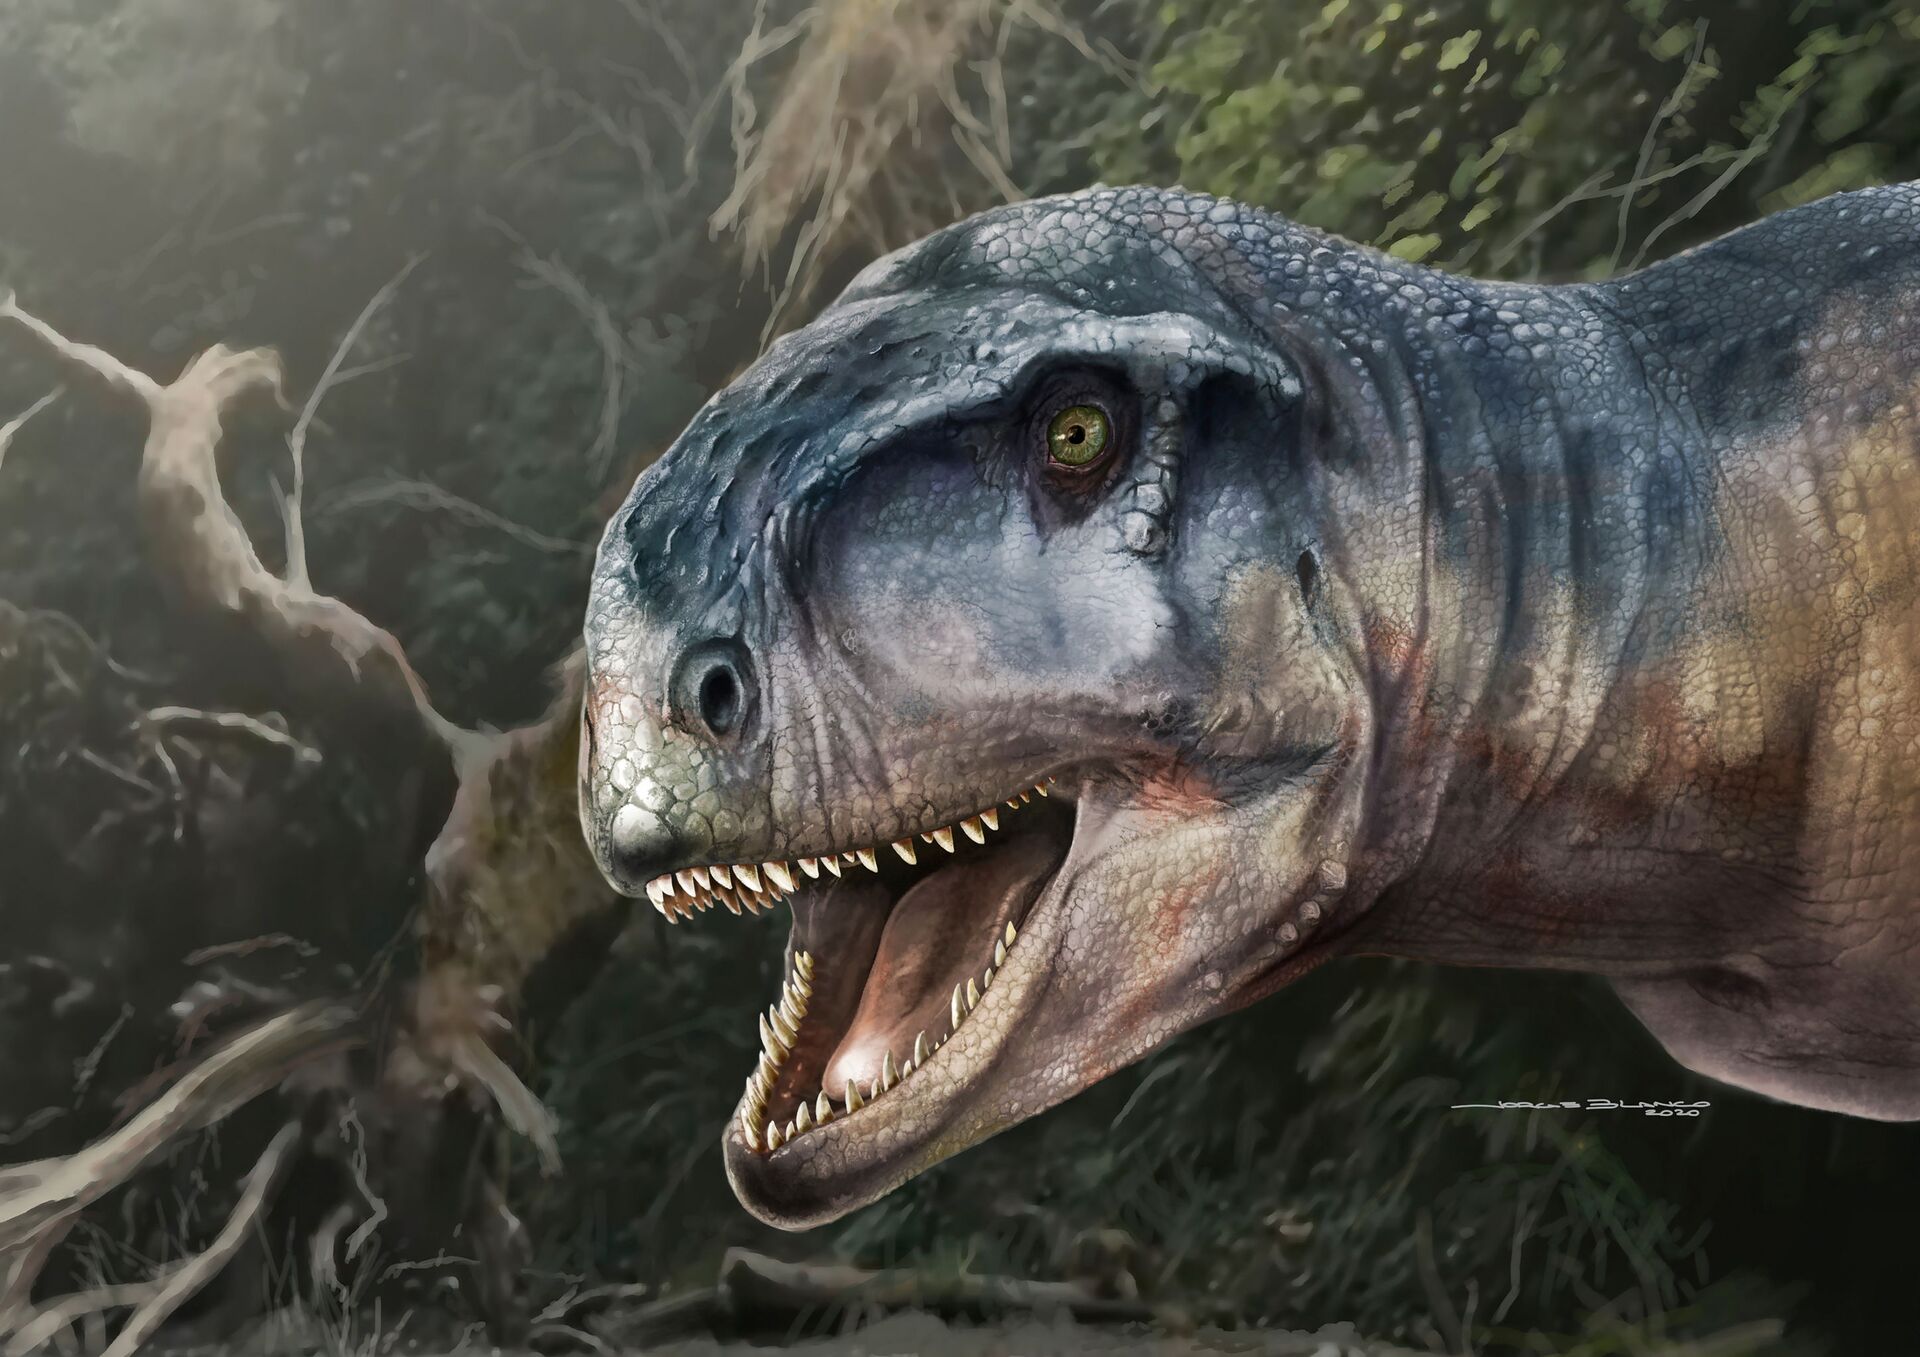 Novo 'tiranossauro' com crânio assustador pode ter aterrorizado Patagônia há 80 milhões anos (FOTOS) - Sputnik Brasil, 1920, 31.03.2021